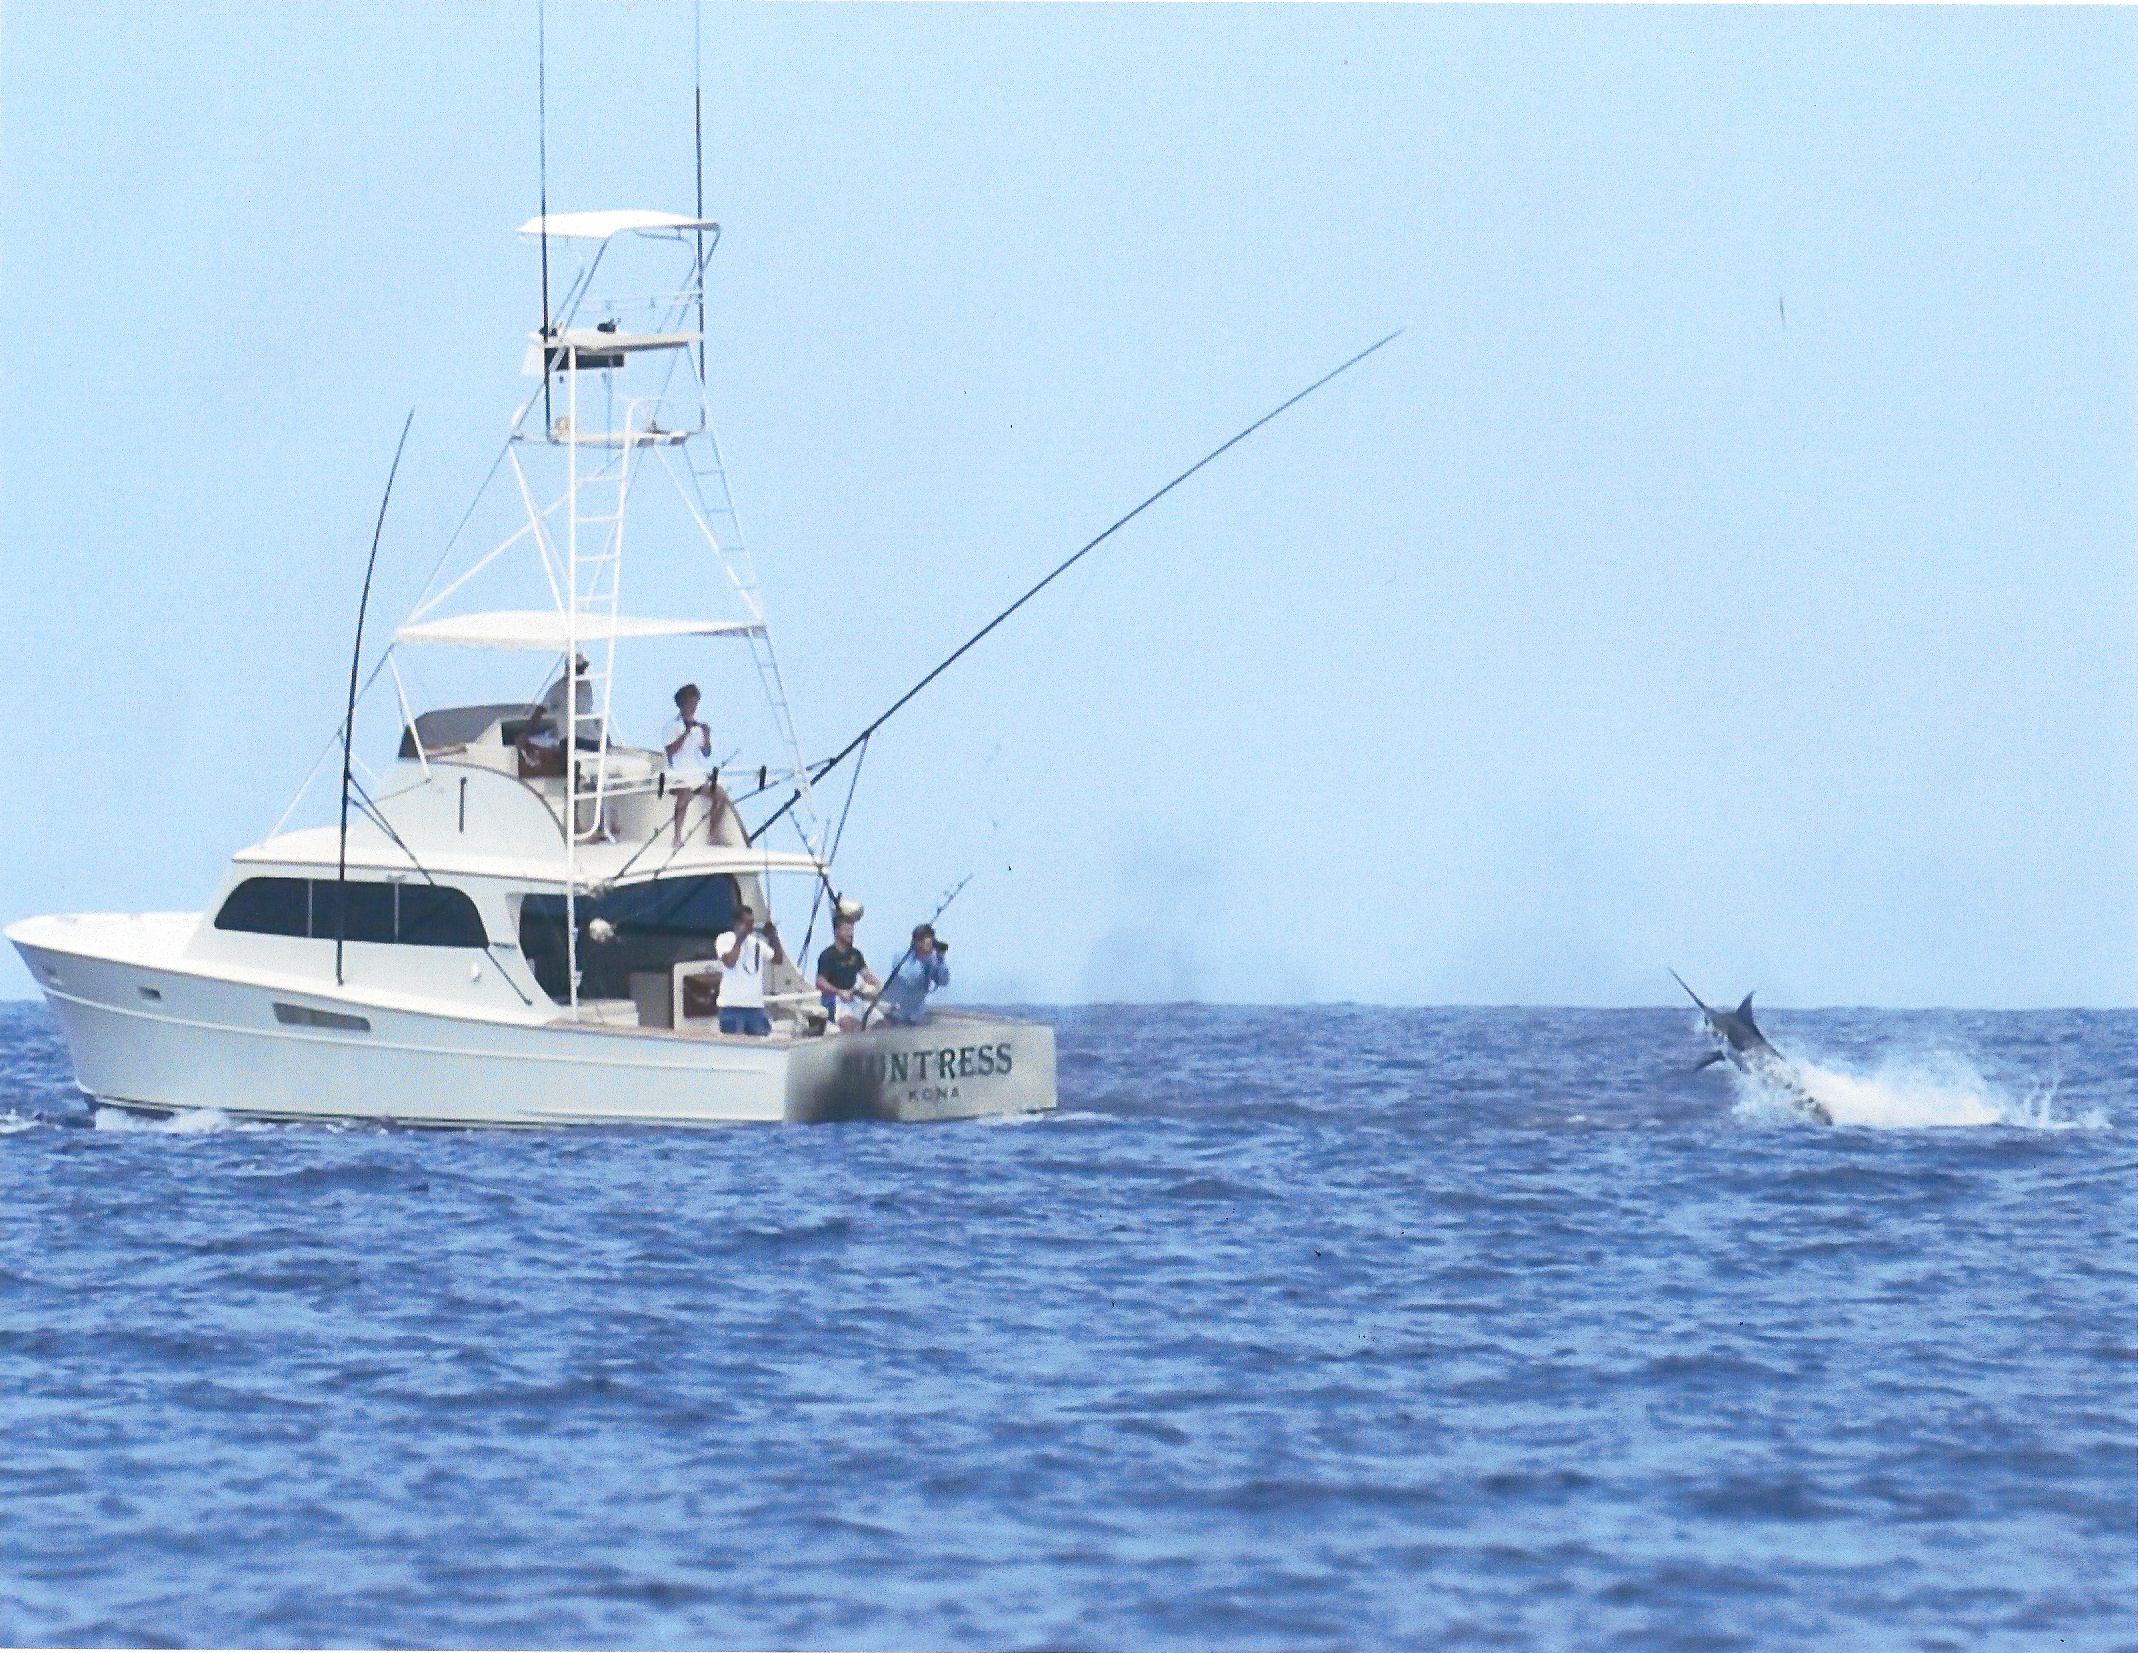 Marlin Fishing in Kona on the Huntress! | Marlin Fishing Kona Hawaii ...